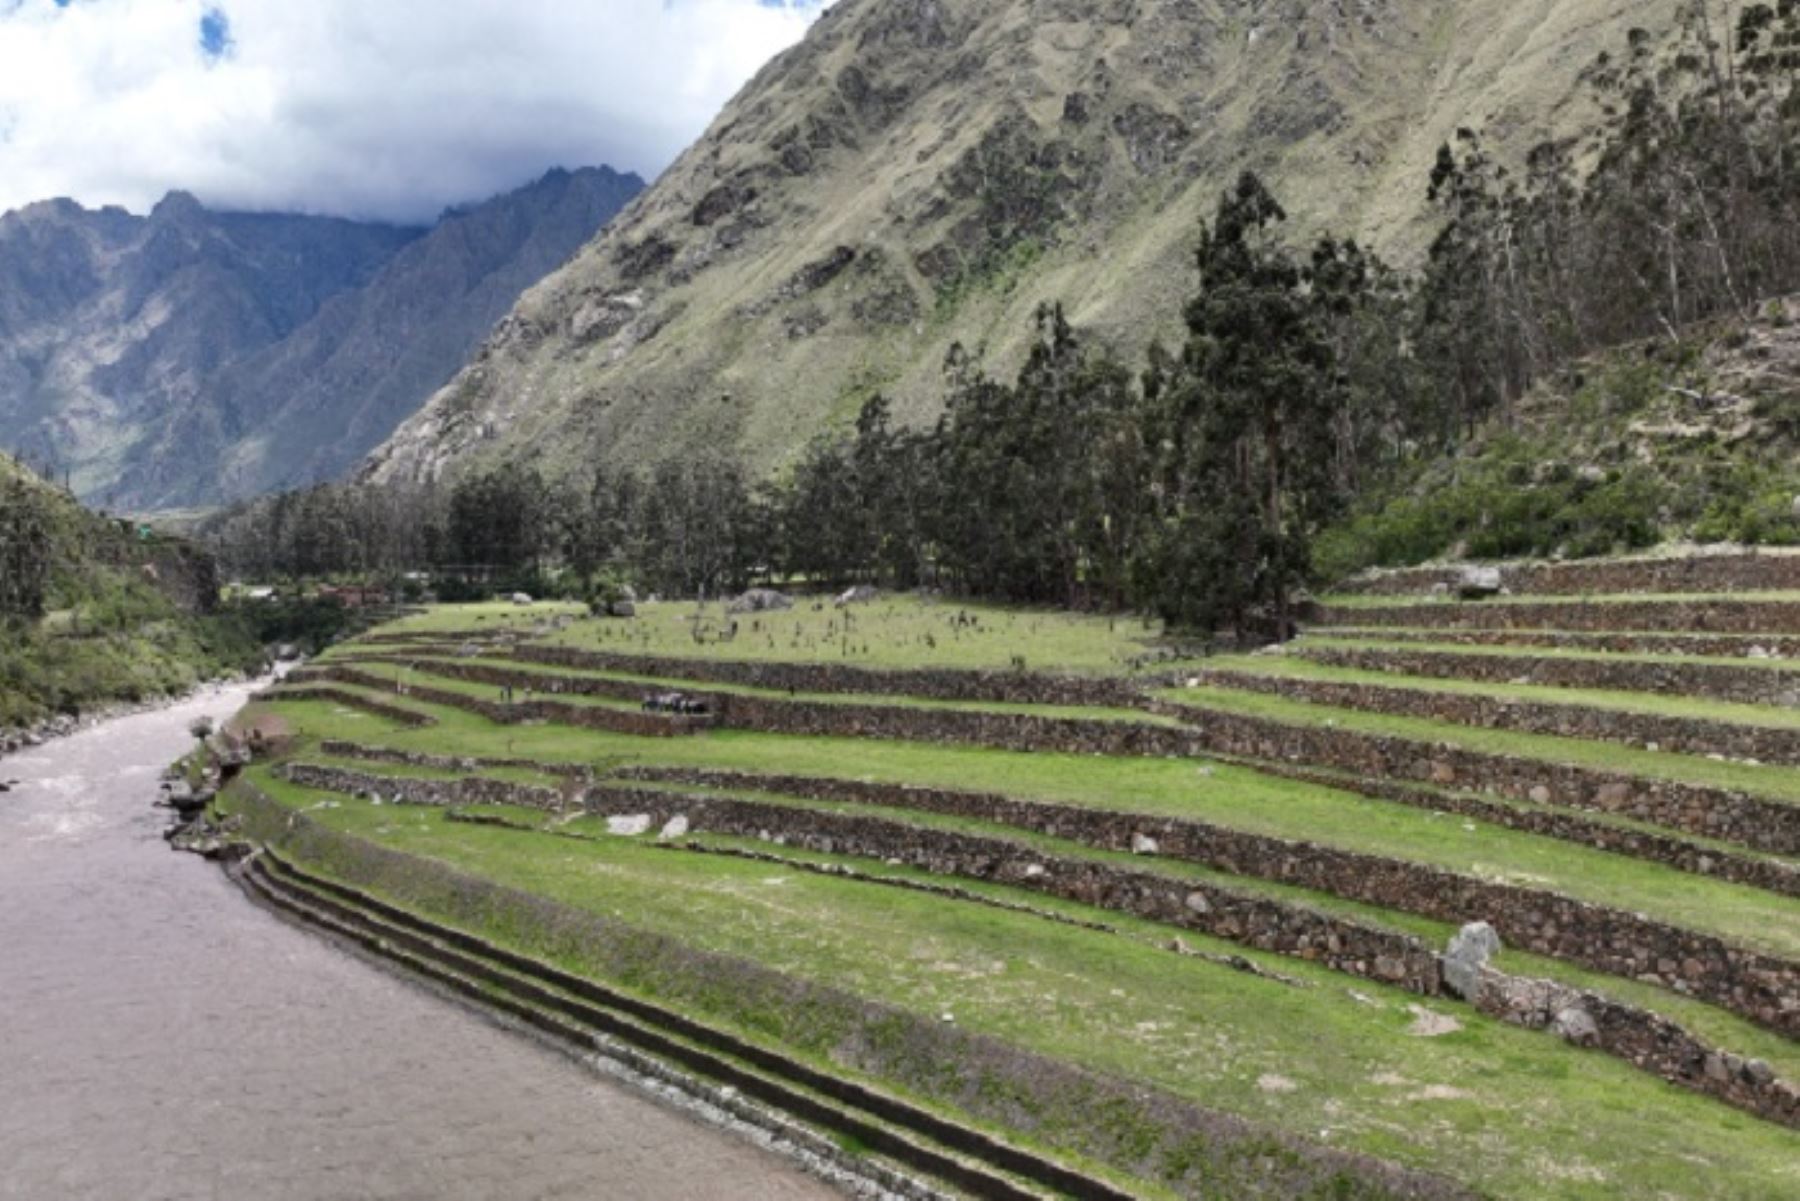 En la obra participaron 118 personas, tanto profesionales como técnicos, auxiliares y obreros; muchos del distrito de Machu Picchu.